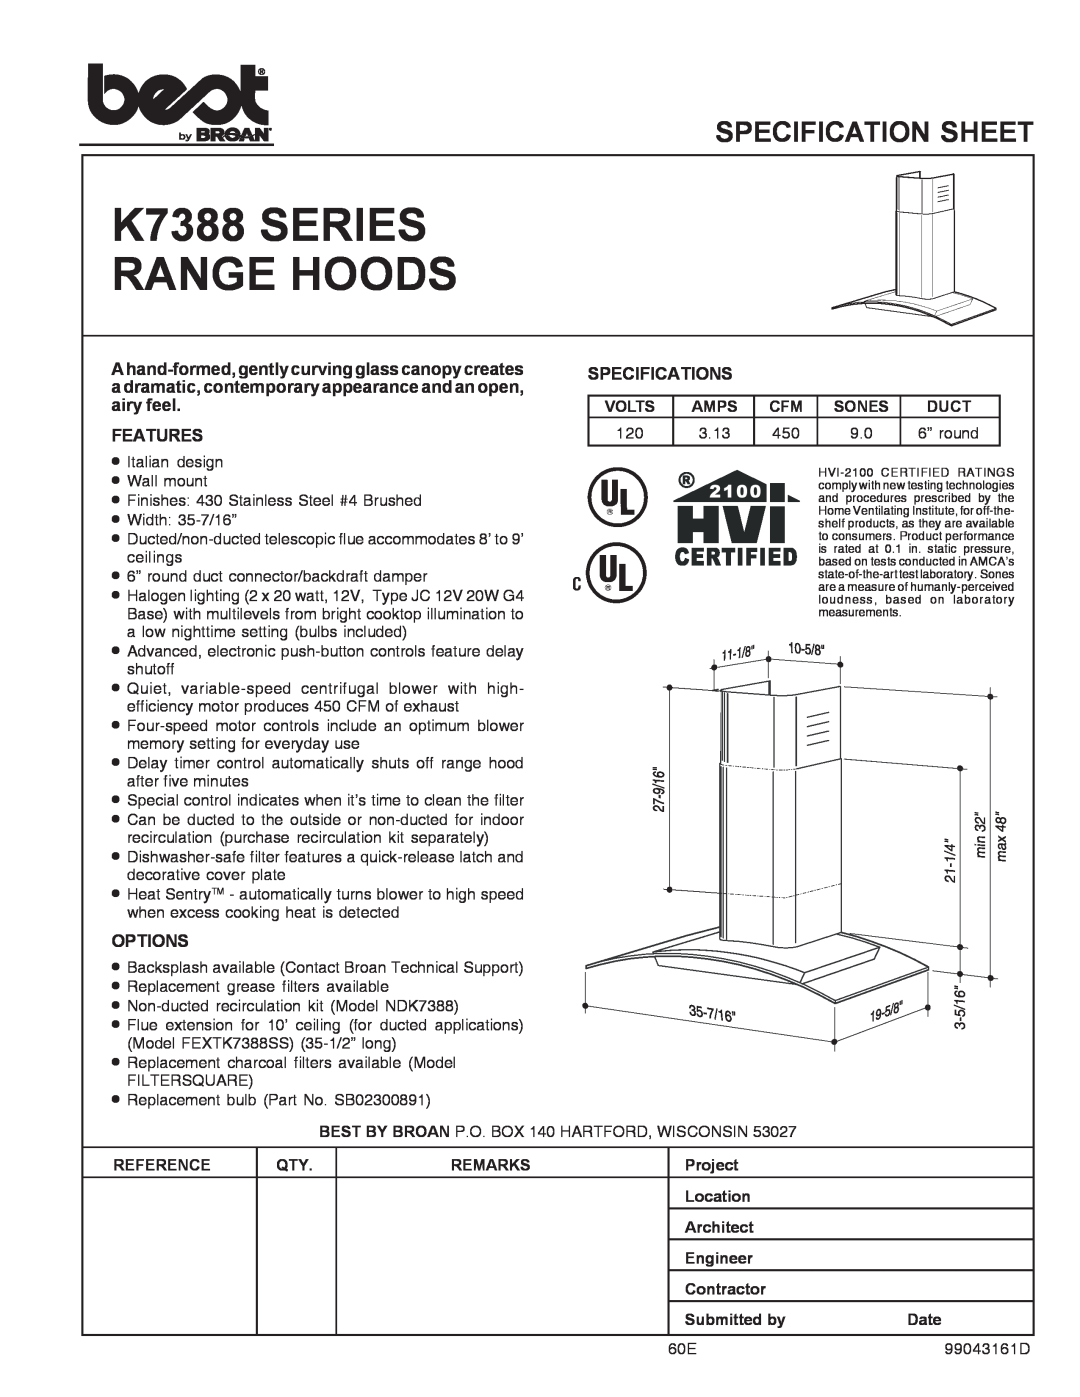 Best specifications K7388 SERIES RANGE HOODS, Specification Sheet, Ahand-formed,gentlycurvingglasscanopycreates 